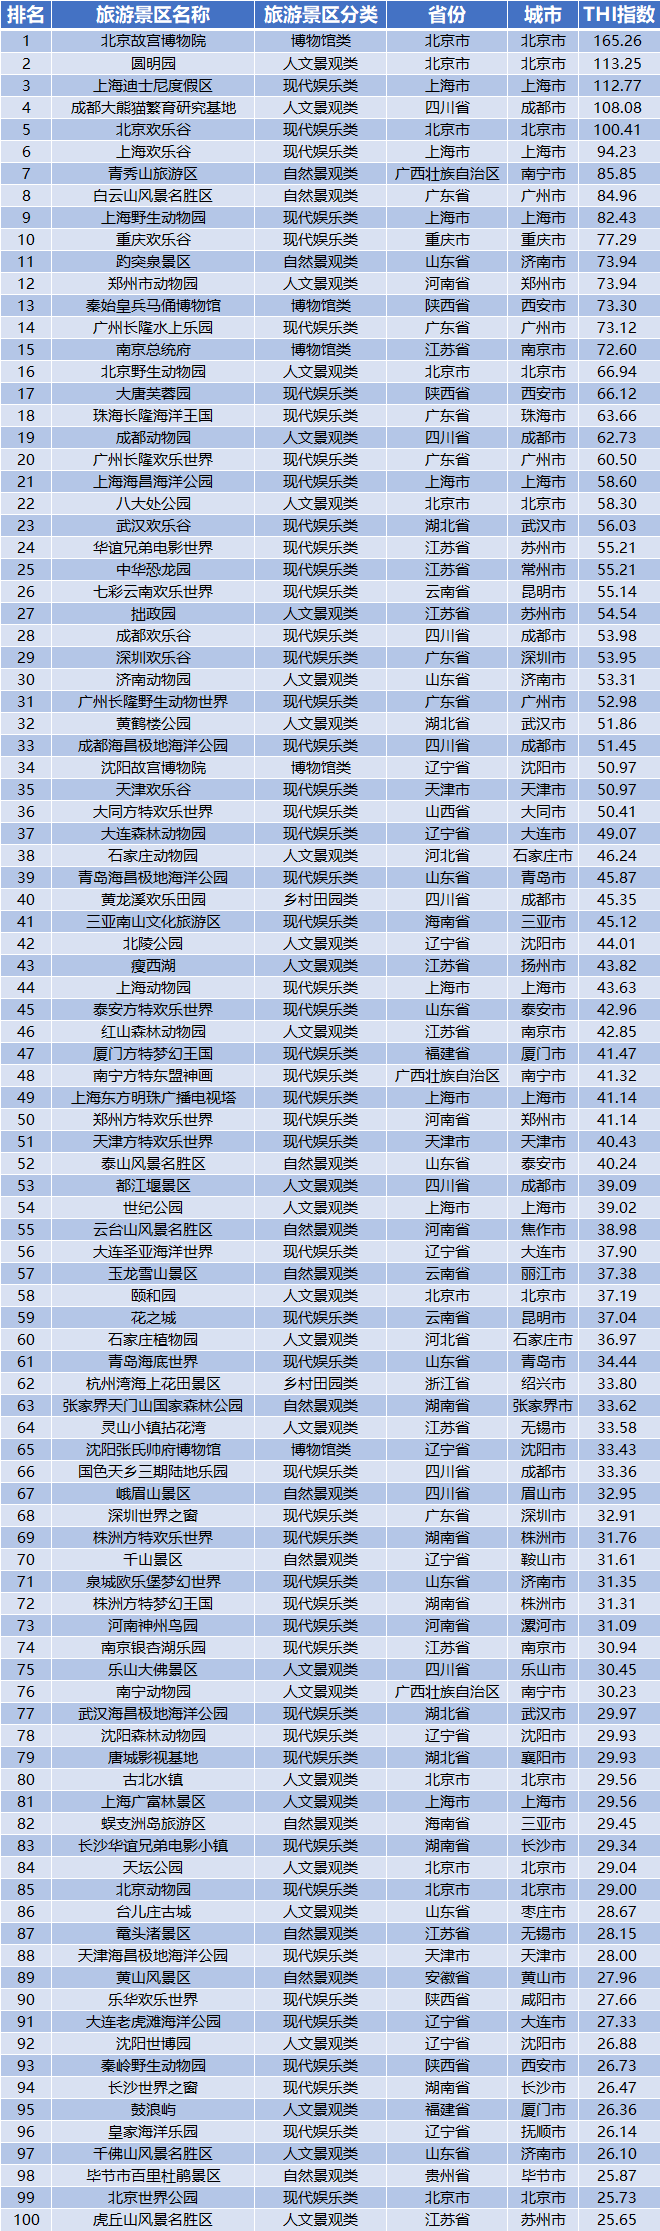 欢乐爆棚！云台山入选中国旅游景区欢乐指数TOP100榜单！